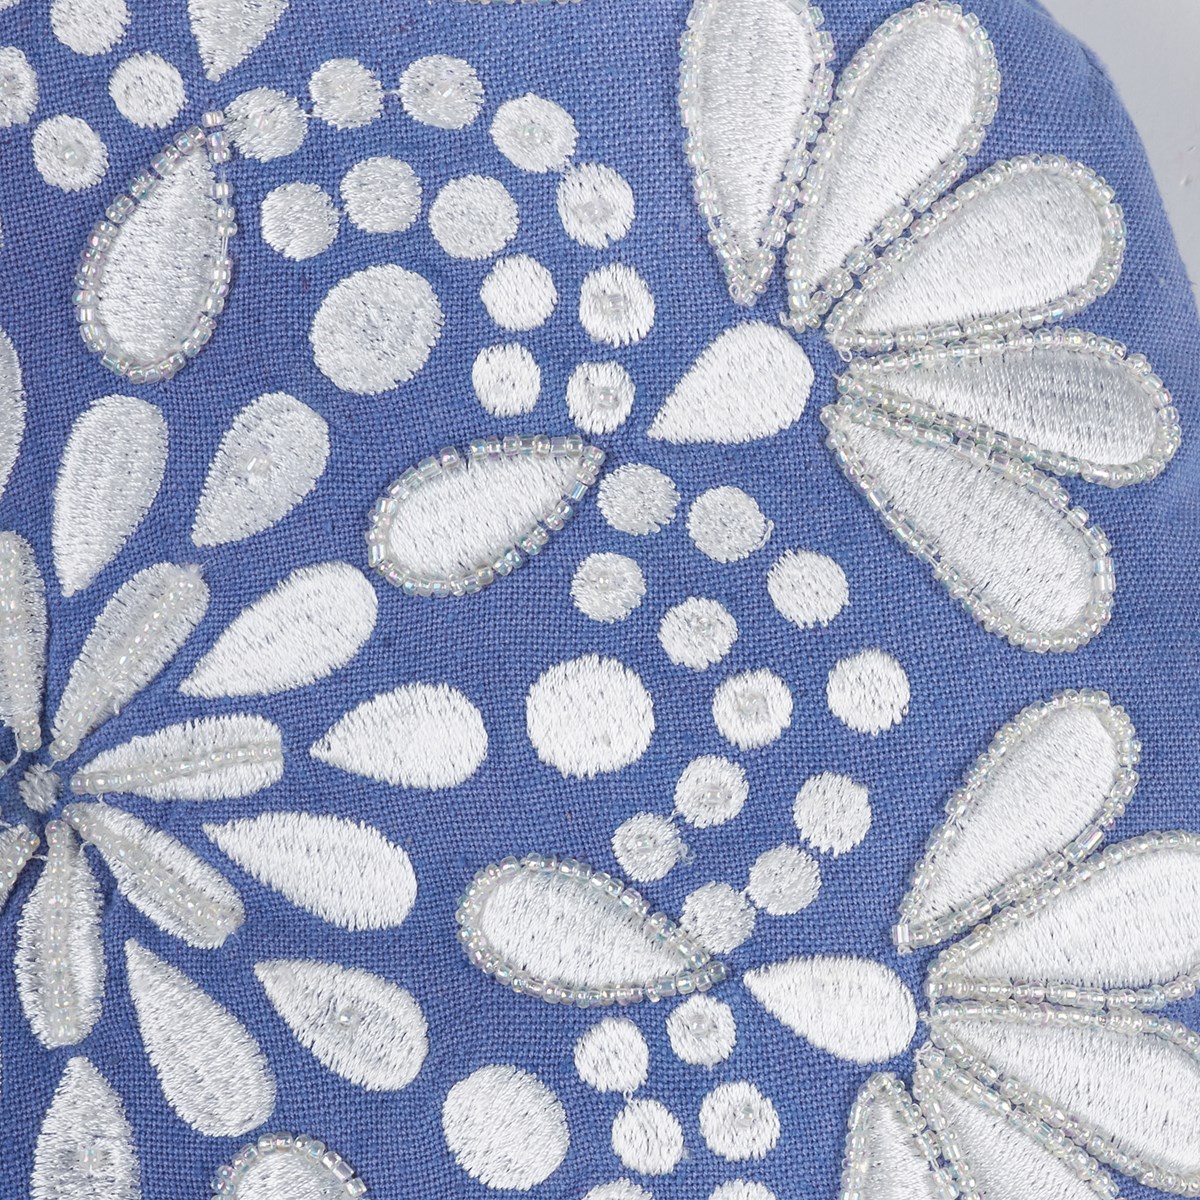 Mandala Shaped Pillow - Cotton, Linen, Velvet, Plastic